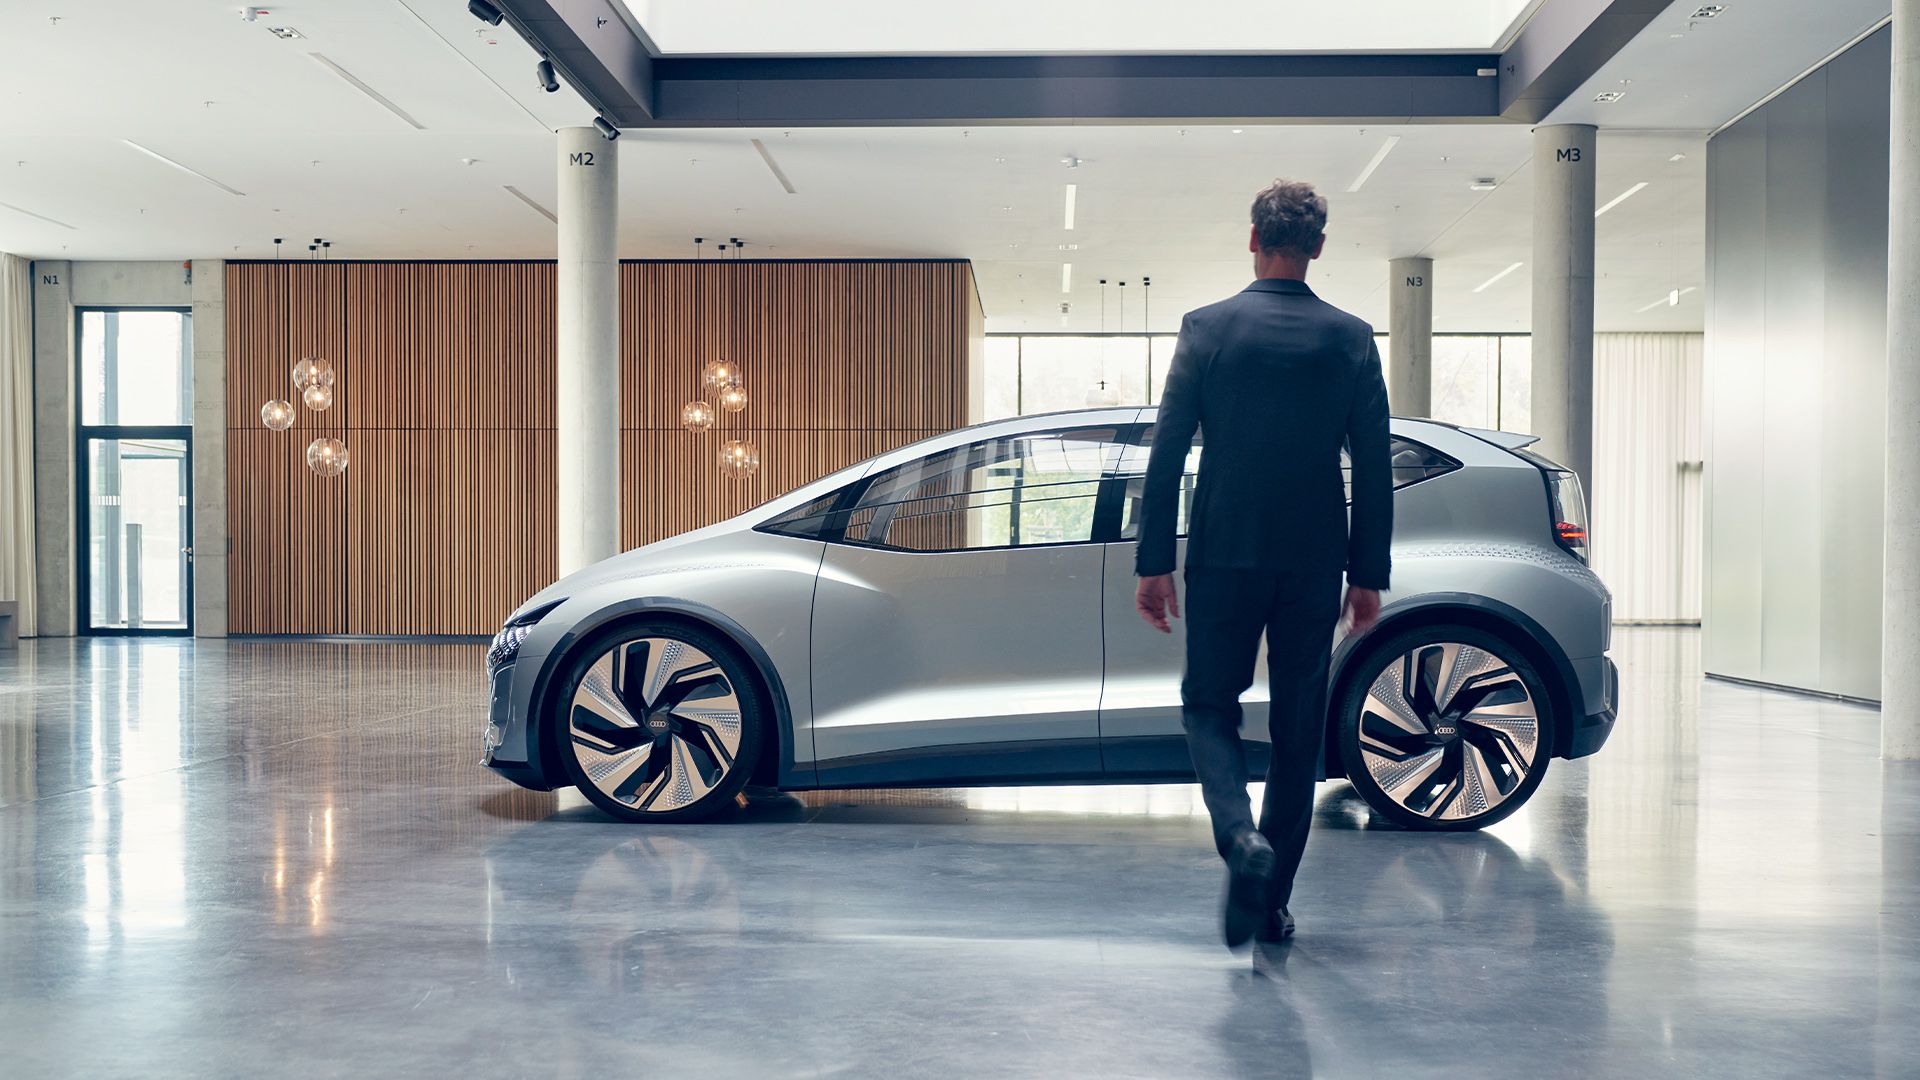 De Audi AI:ME¹ werd voor het eerst onthuld op Auto Shanghai 2019. Het visionaire mobiliteitsconcept voor de megasteden van de toekomst heeft compacte afmetingen, een baanbrekend interieur en de mogelijkheid om op niveau 4² in hoge mate geautomatiseerd te rijden. De hier getoonde auto is een conceptauto en is niet beschikbaar als productiemodel.